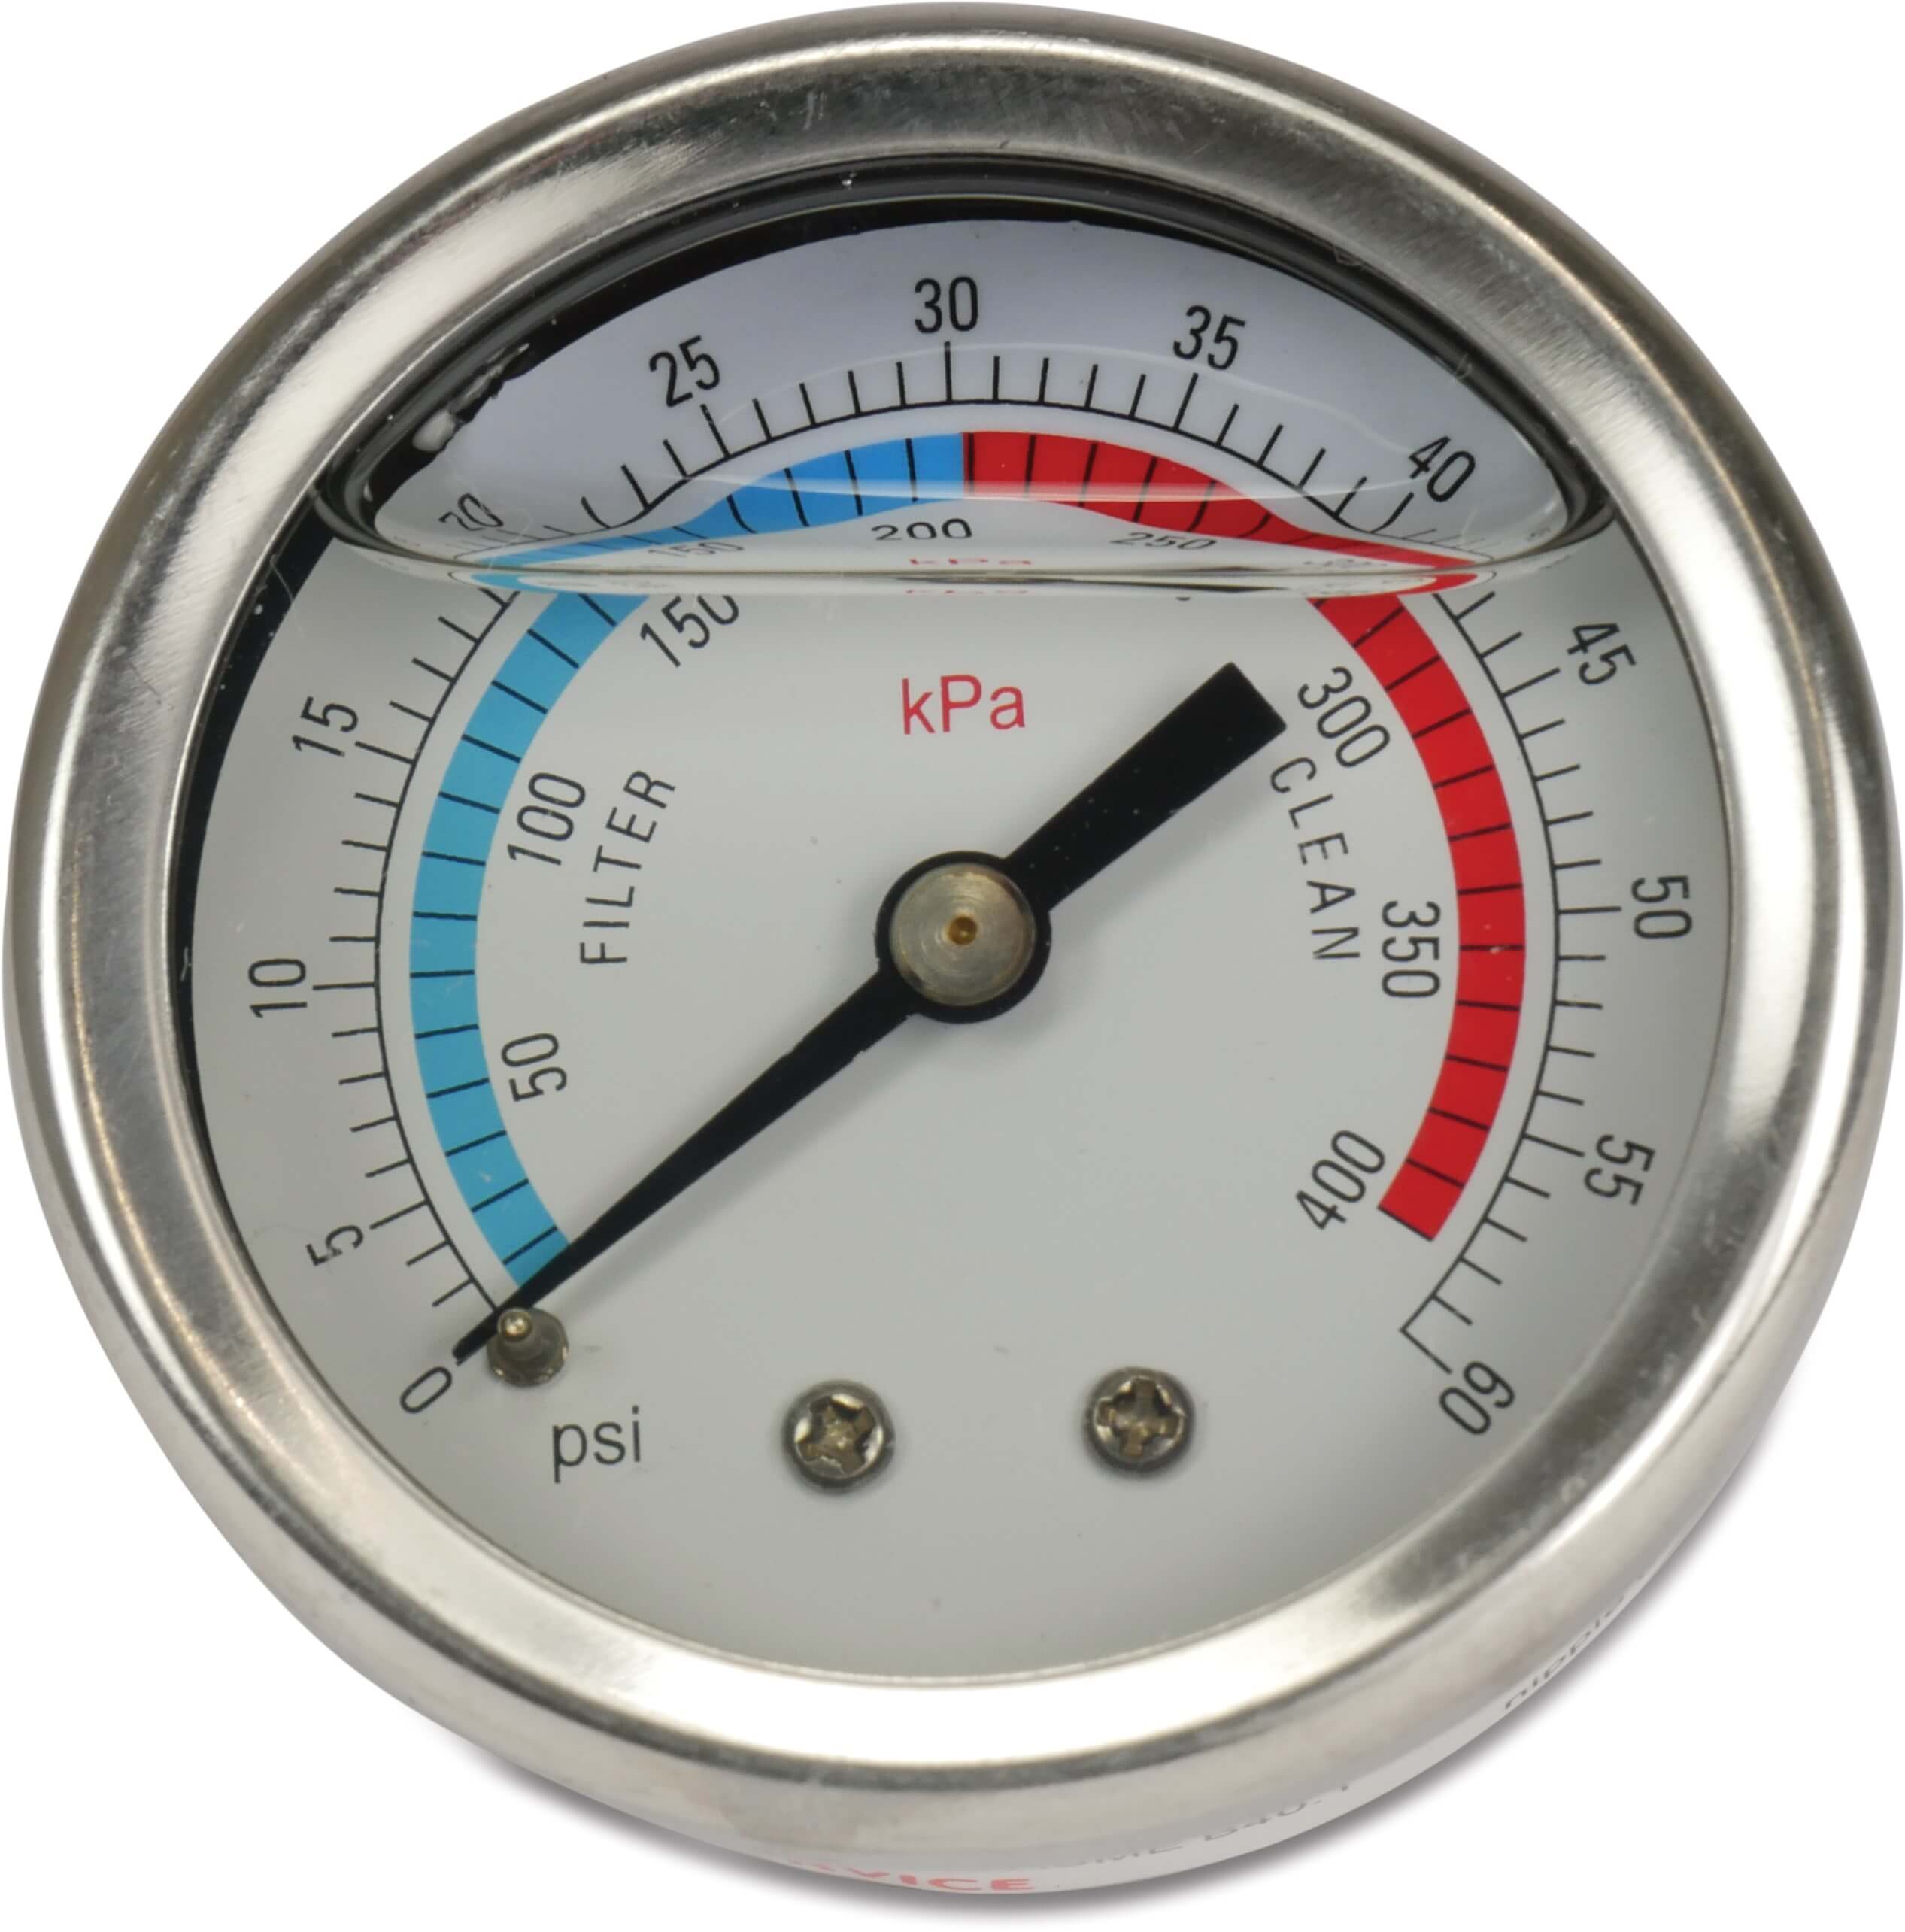 Oil pressure gauge 0-60 PSI back connection